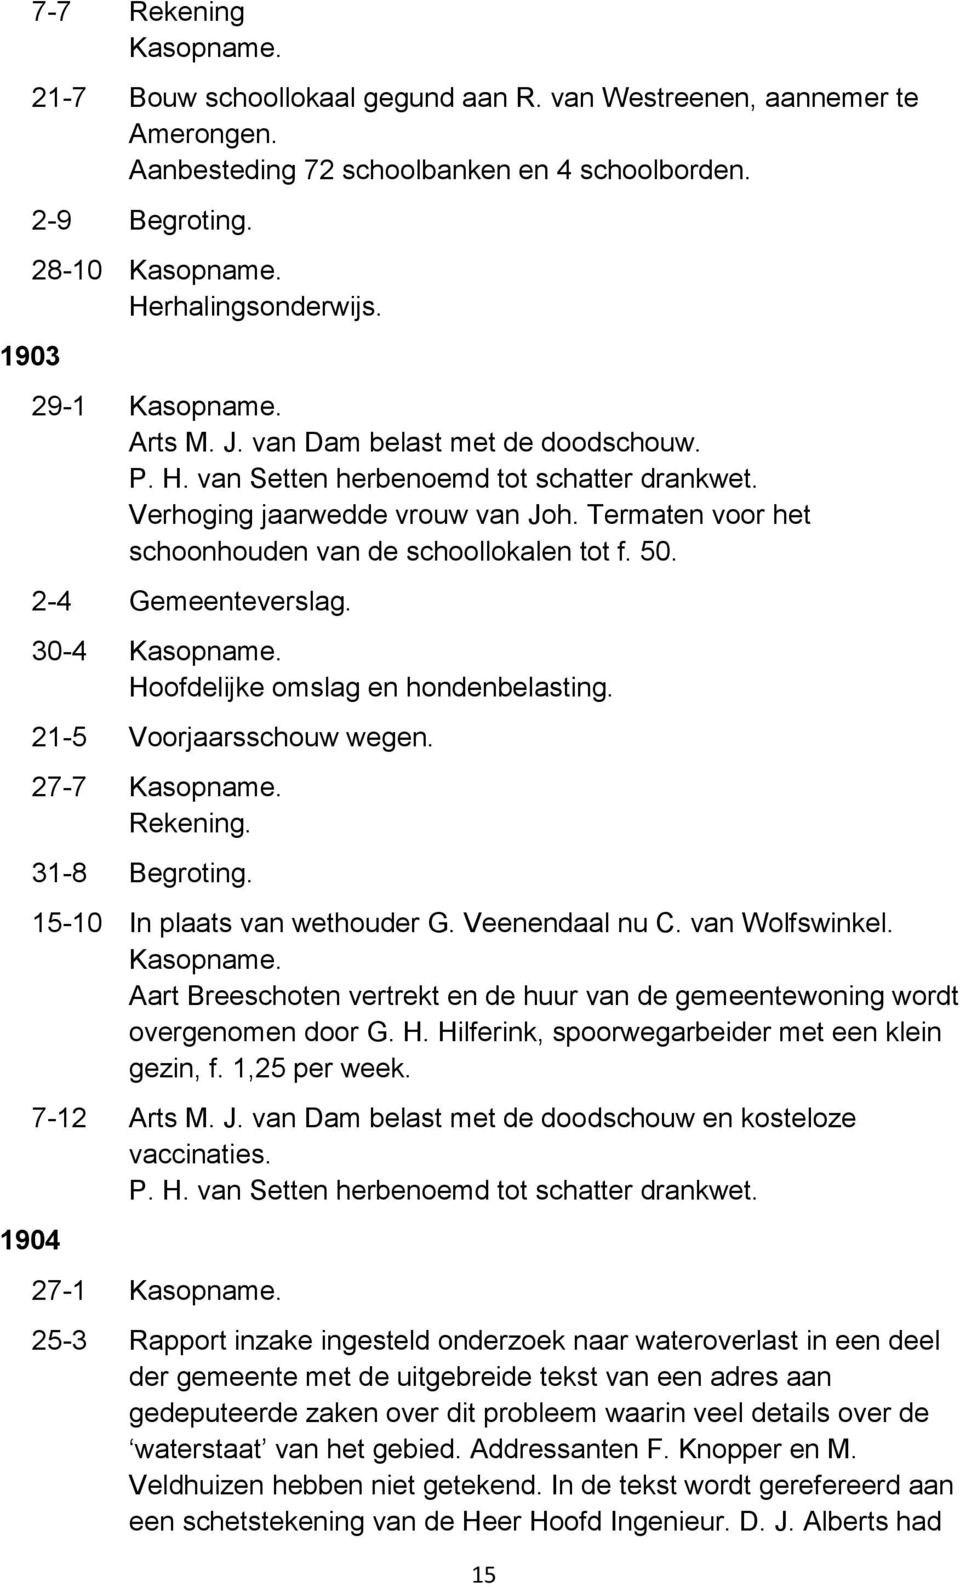 27-7 31-8 Begroting. 15-10 In plaats van wethouder G. Veenendaal nu C. van Wolfswinkel. Aart Breeschoten vertrekt en de huur van de gemeentewoning wordt overgenomen door G. H.